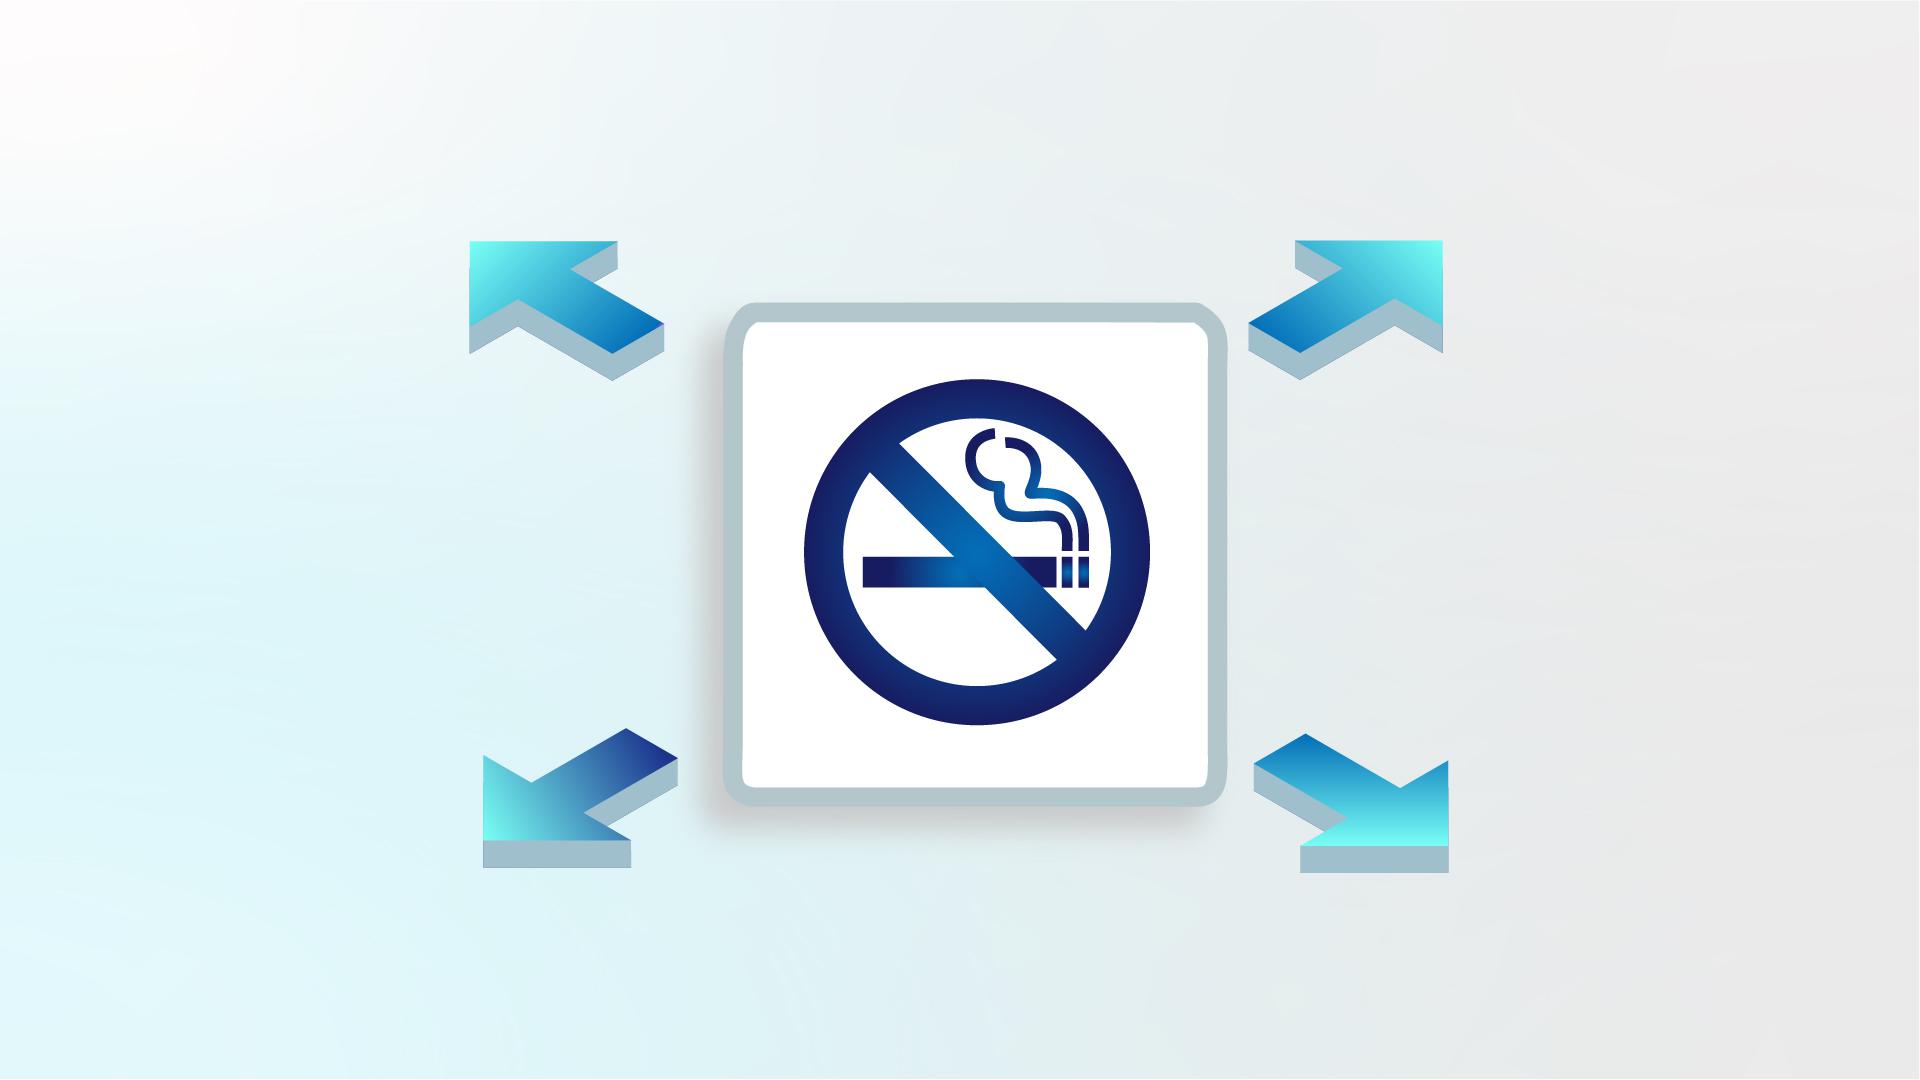 擴大法定禁煙區